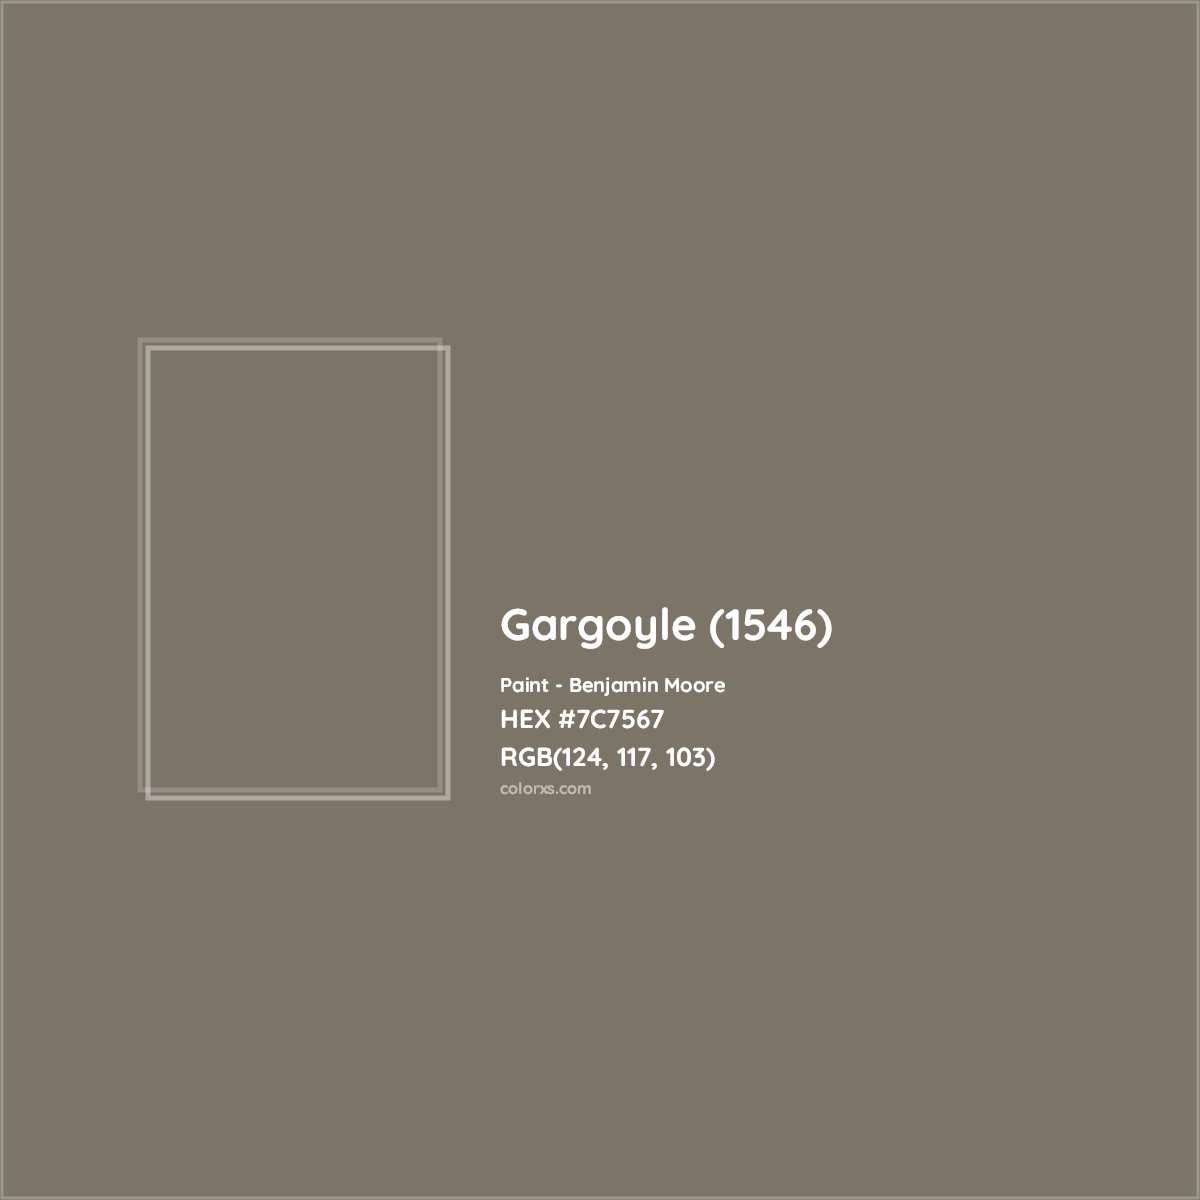 HEX #7C7567 Gargoyle (1546) Paint Benjamin Moore - Color Code